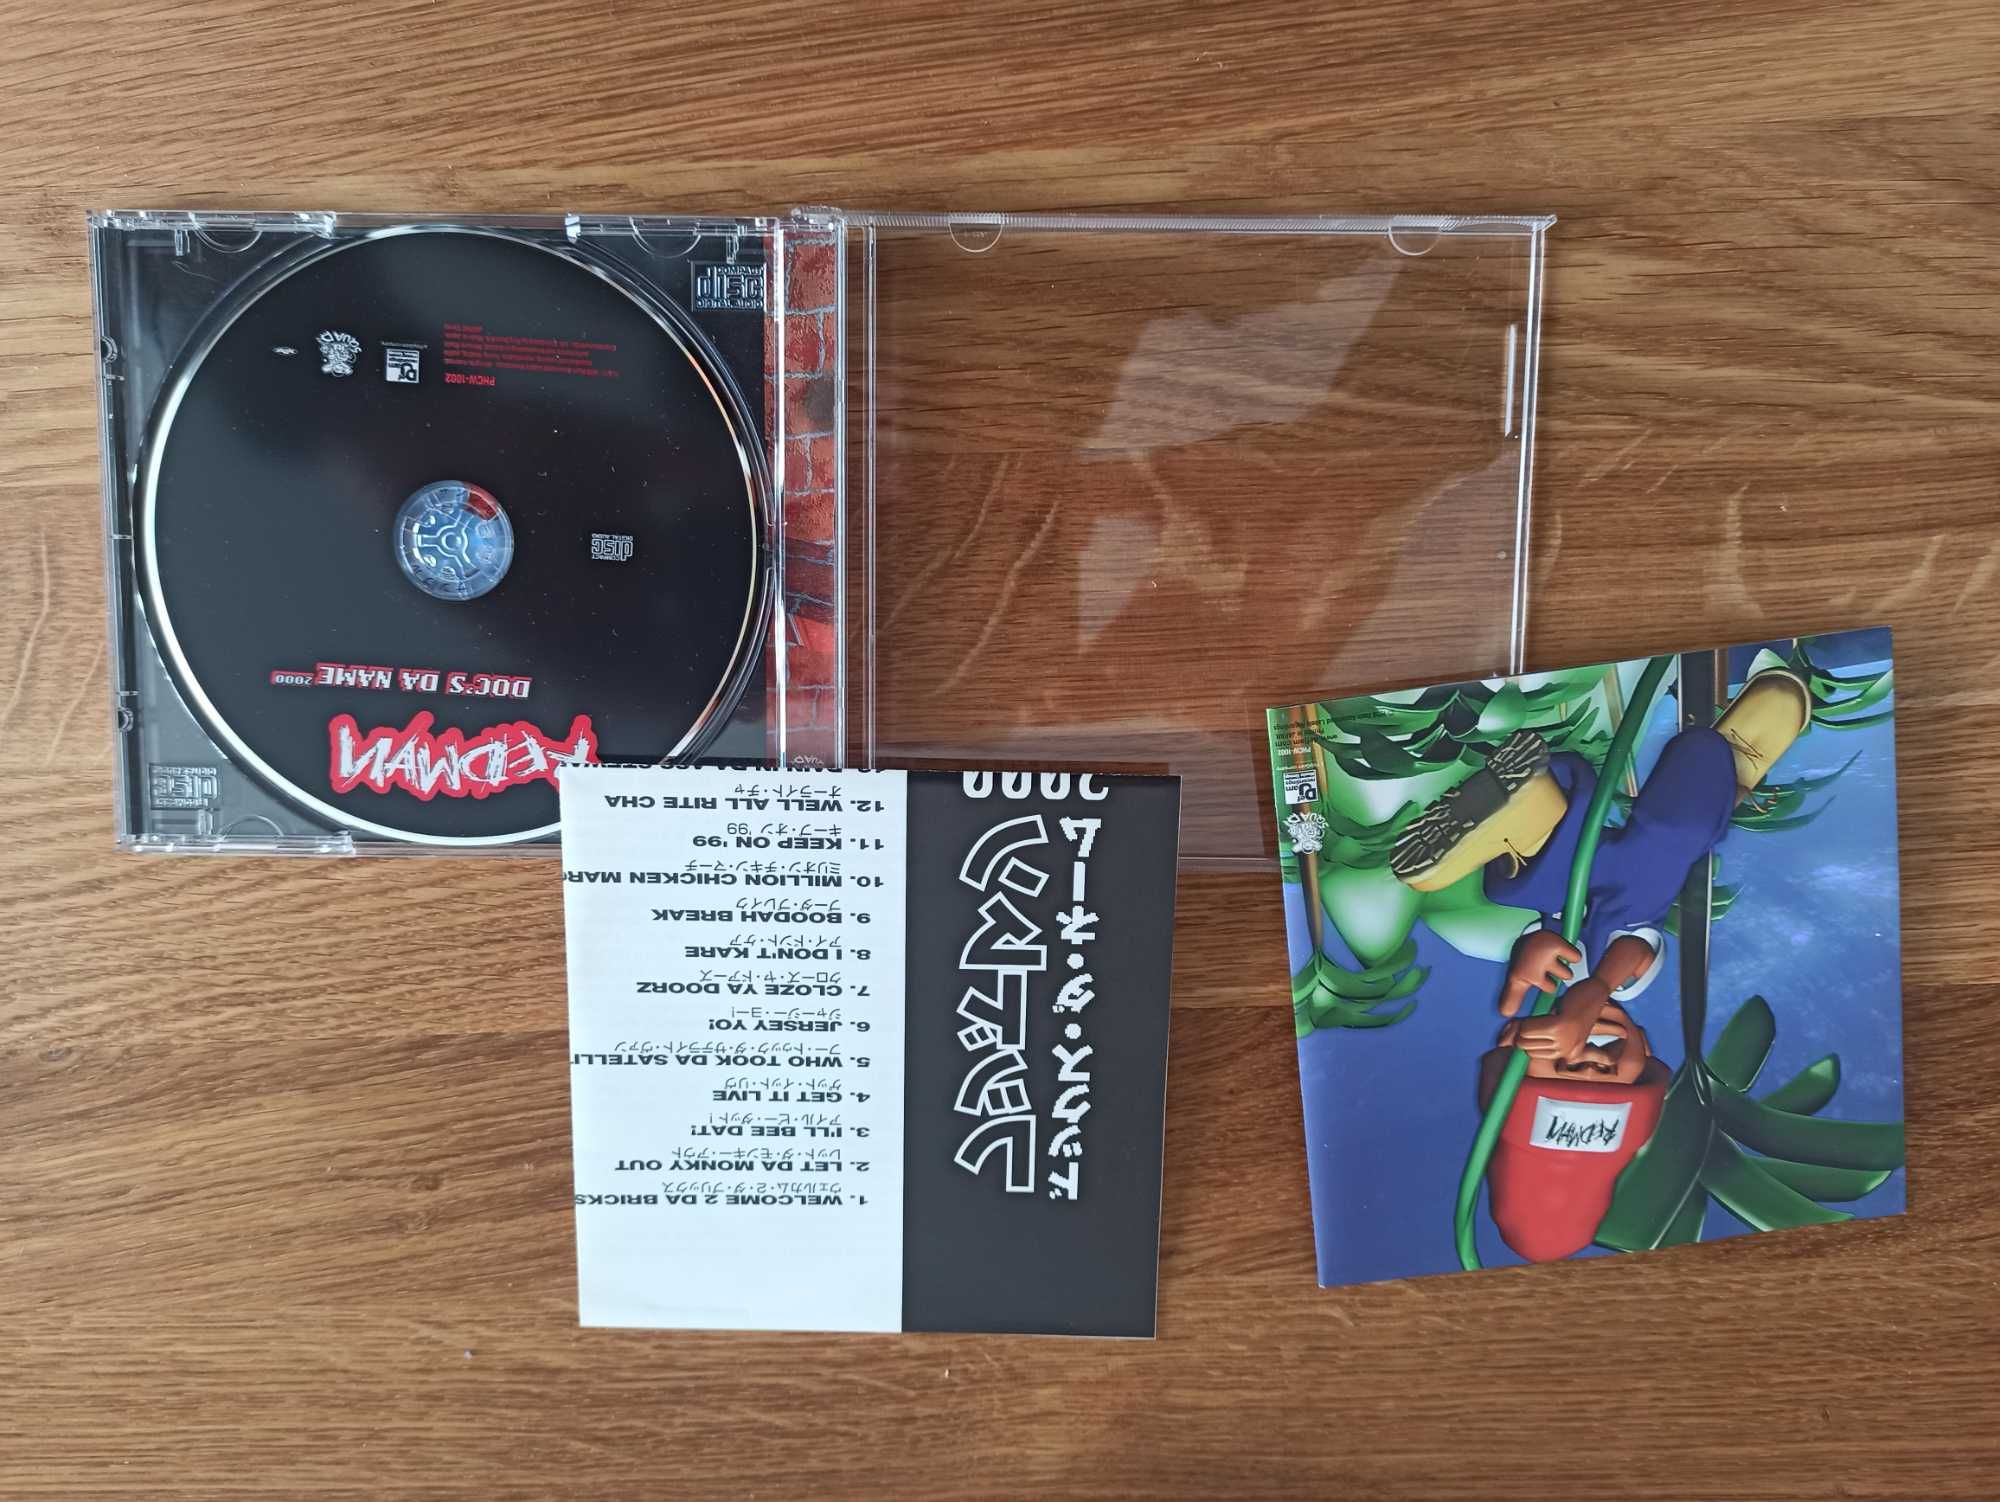 Redman Doc's Da Name 2000 japońskie wydanie Japan super stan CD